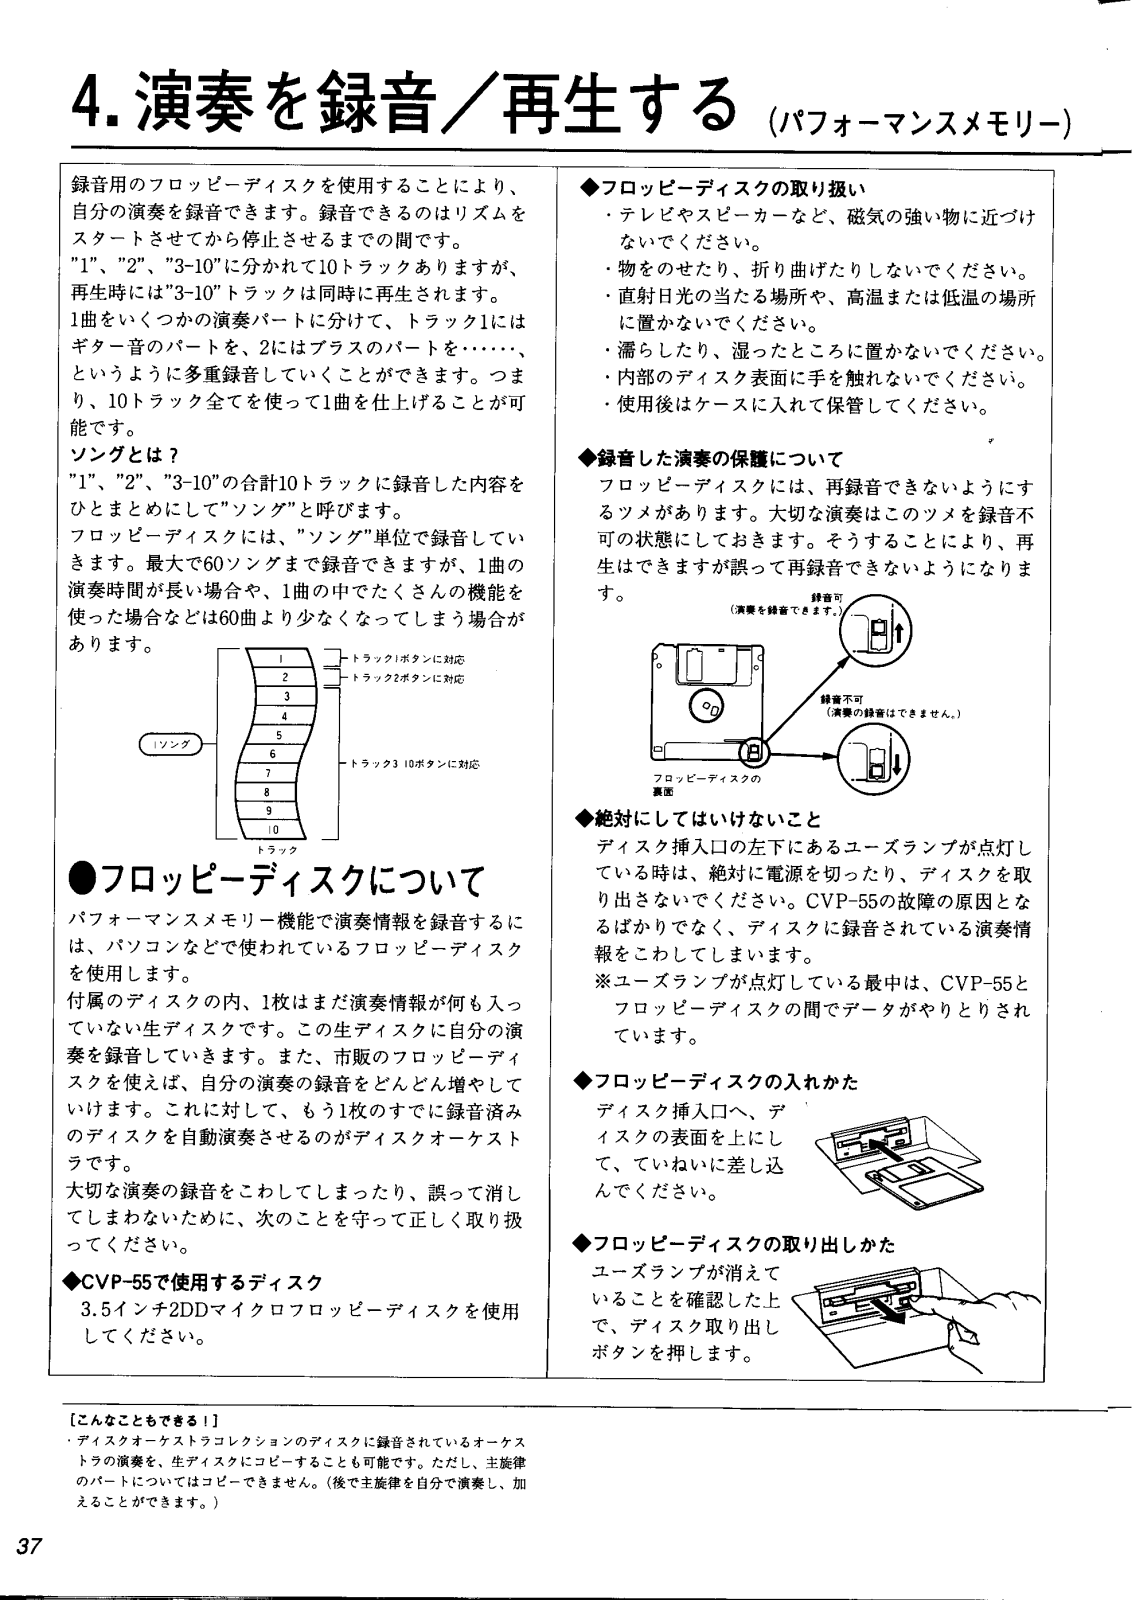 Yamaha CVP-55 User Manual